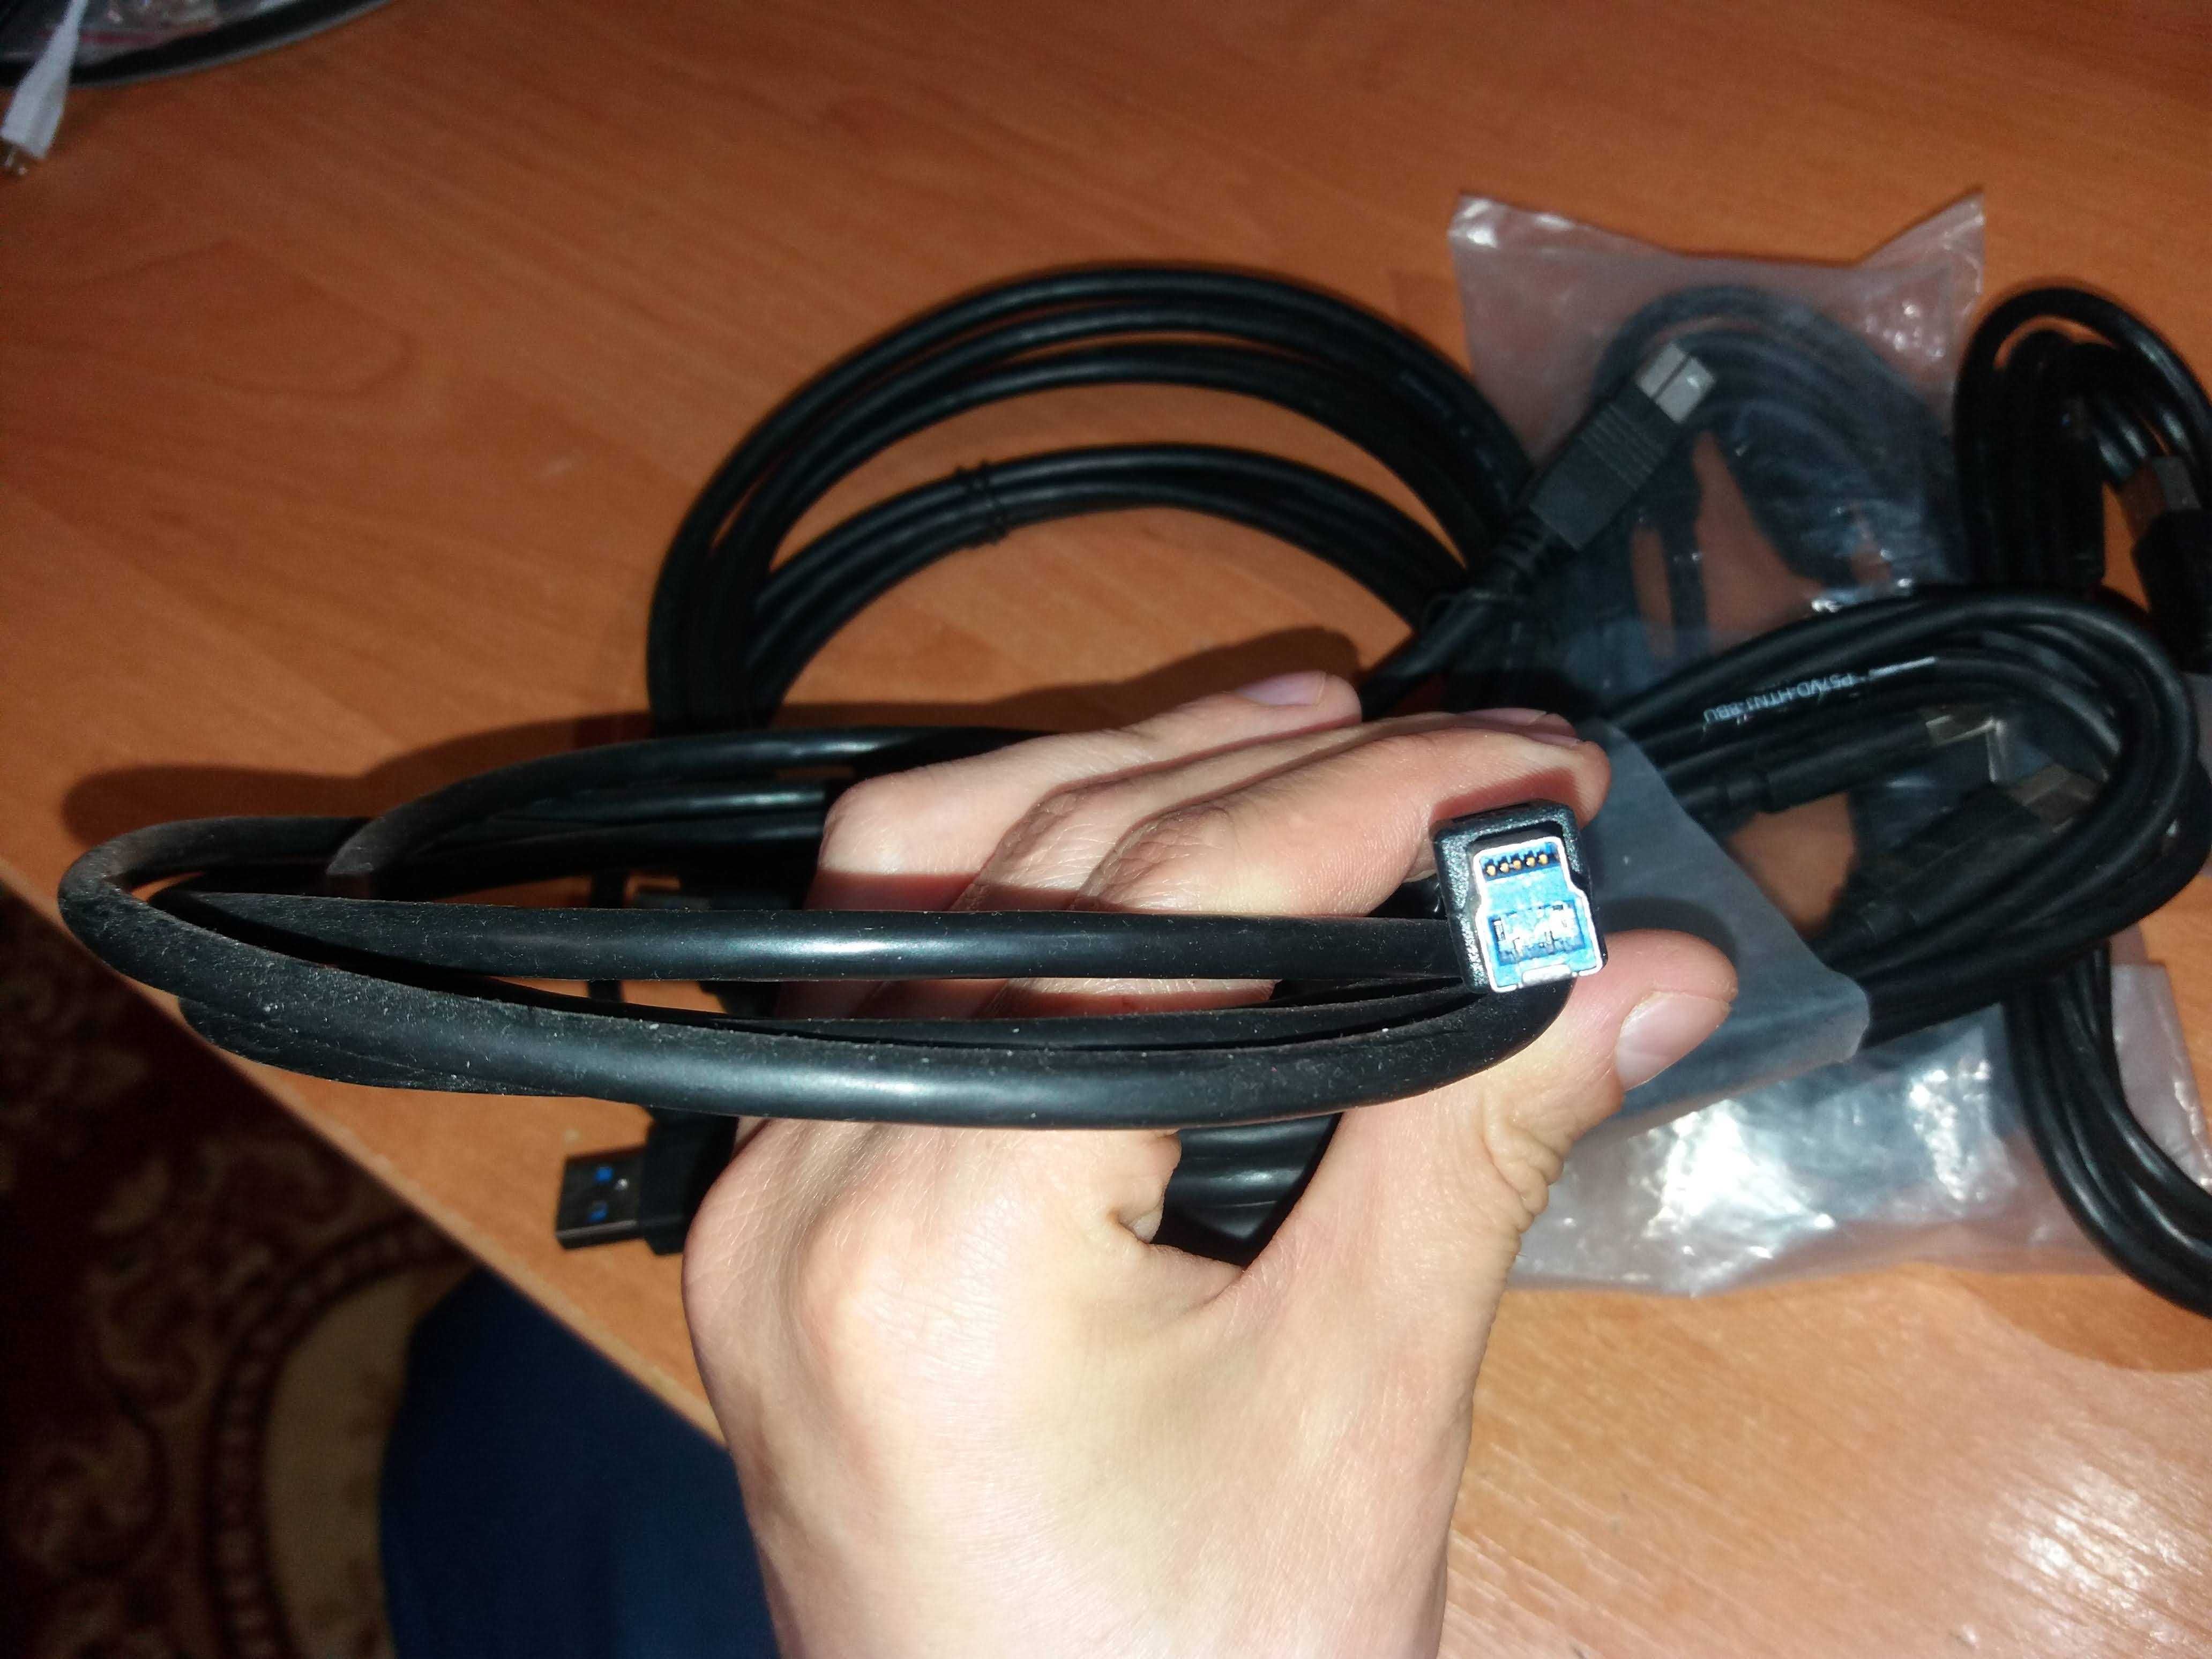 USB 3.0 Cable A-Male to B-Male (15 FT) Type A to B Male SuperSpeed